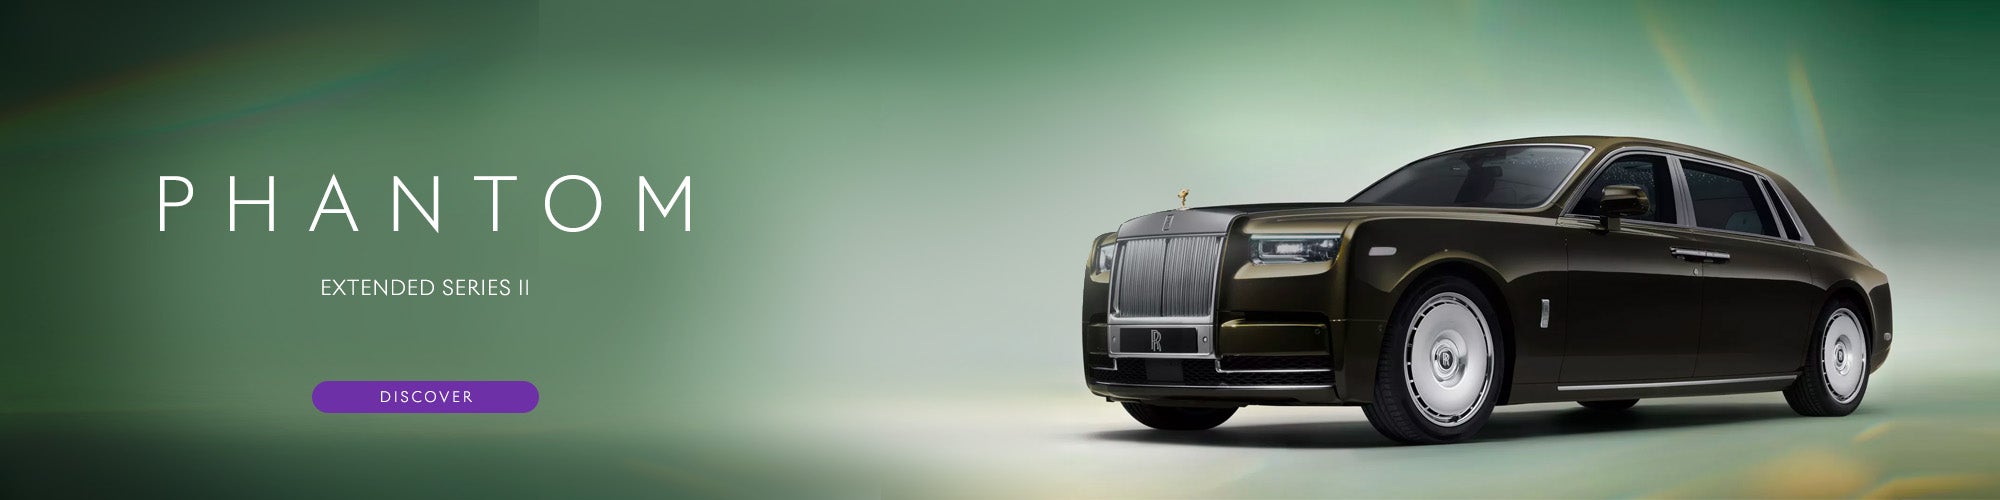 Rolls-Royce Phantom Series II Extended